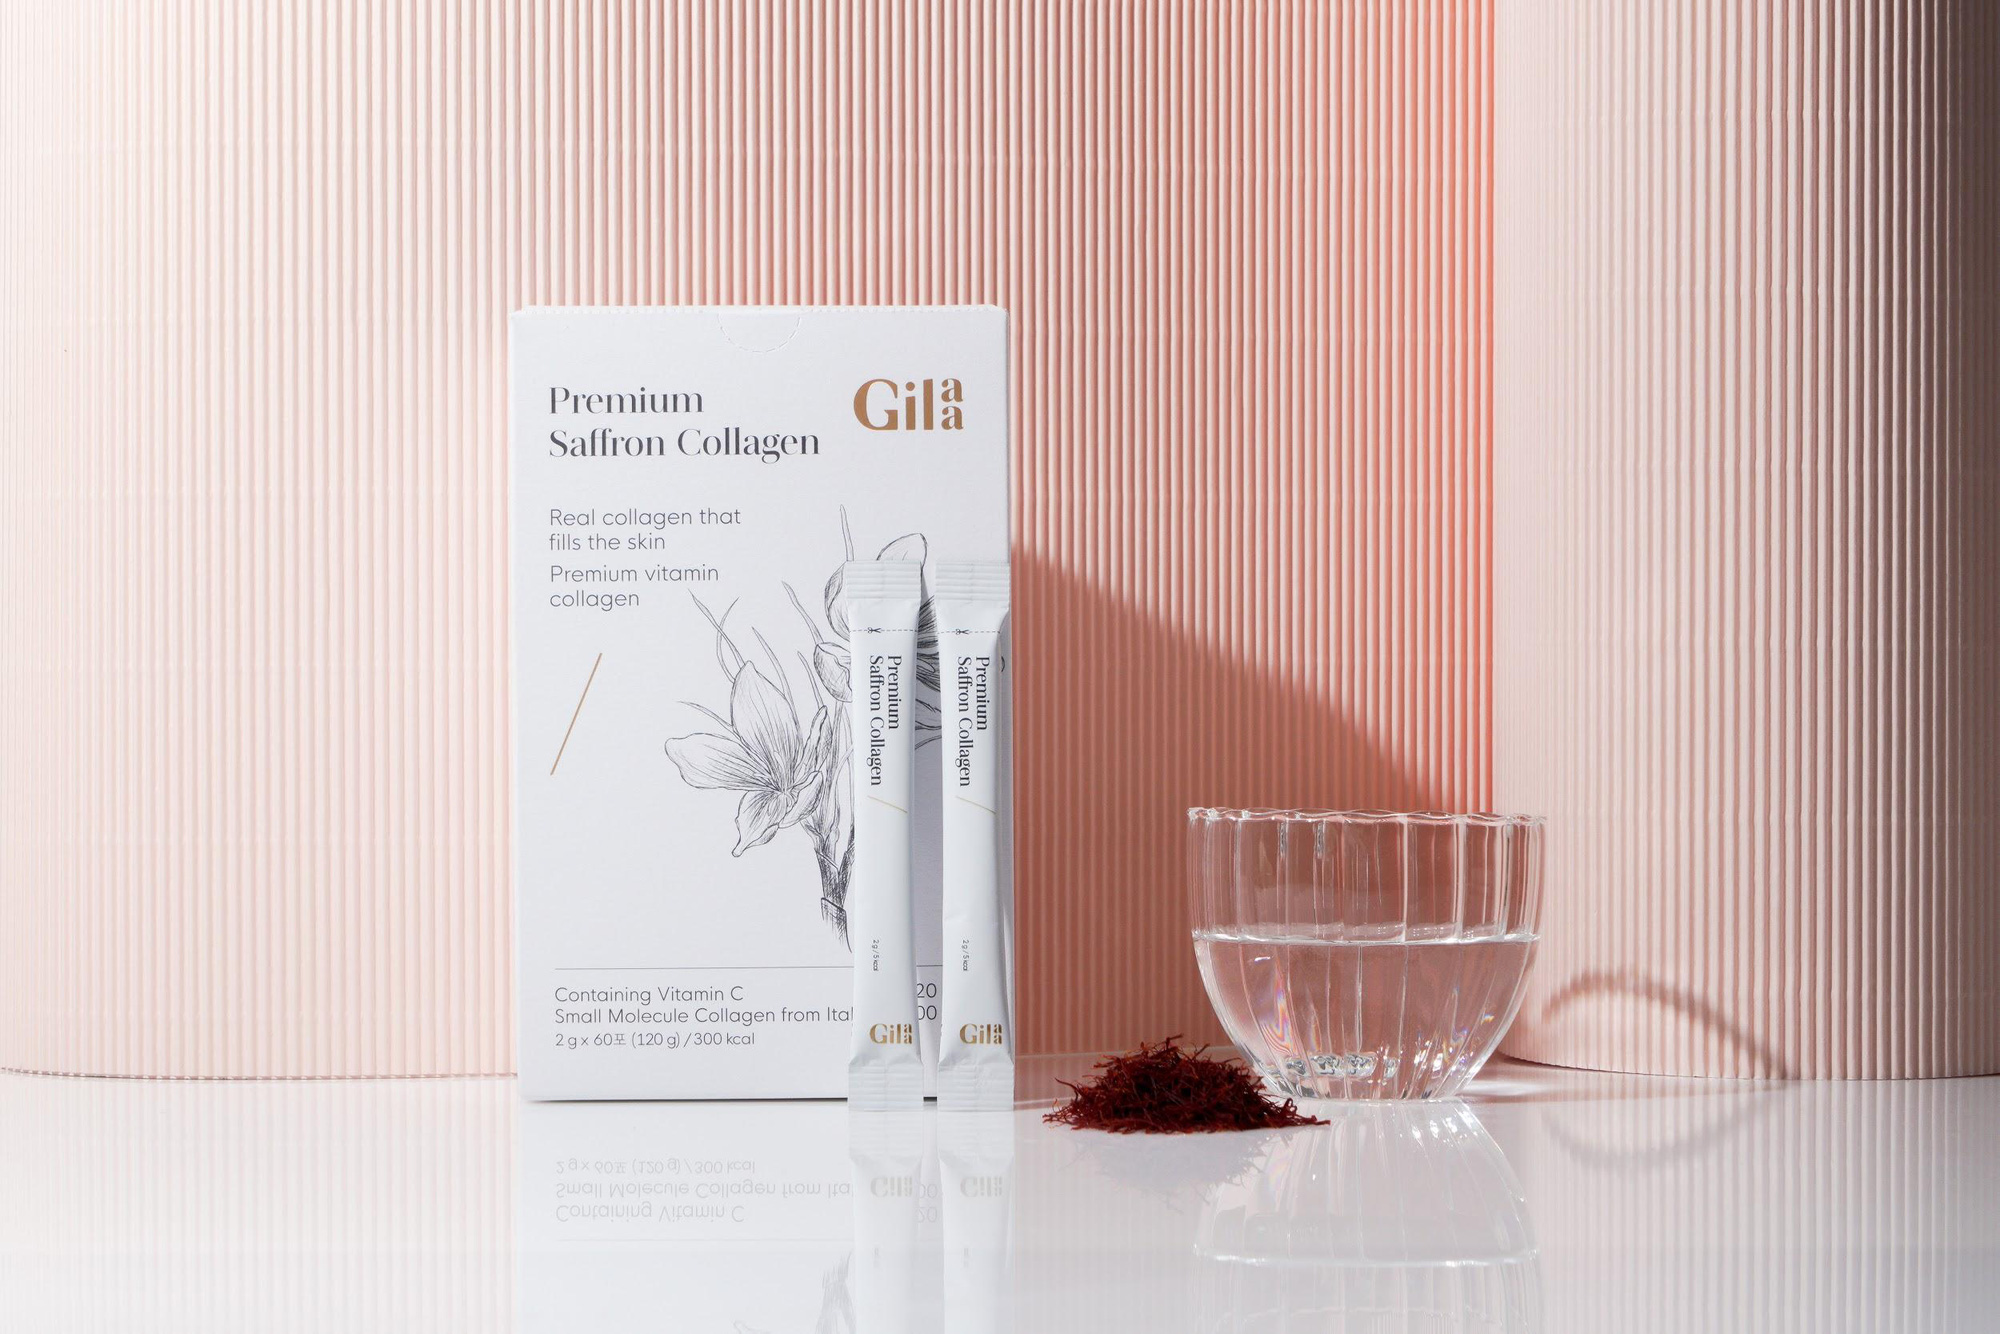 Gilaa Premium Collagen Saffron - Khi hai thành phần vàng kết hợp? - Ảnh 1.